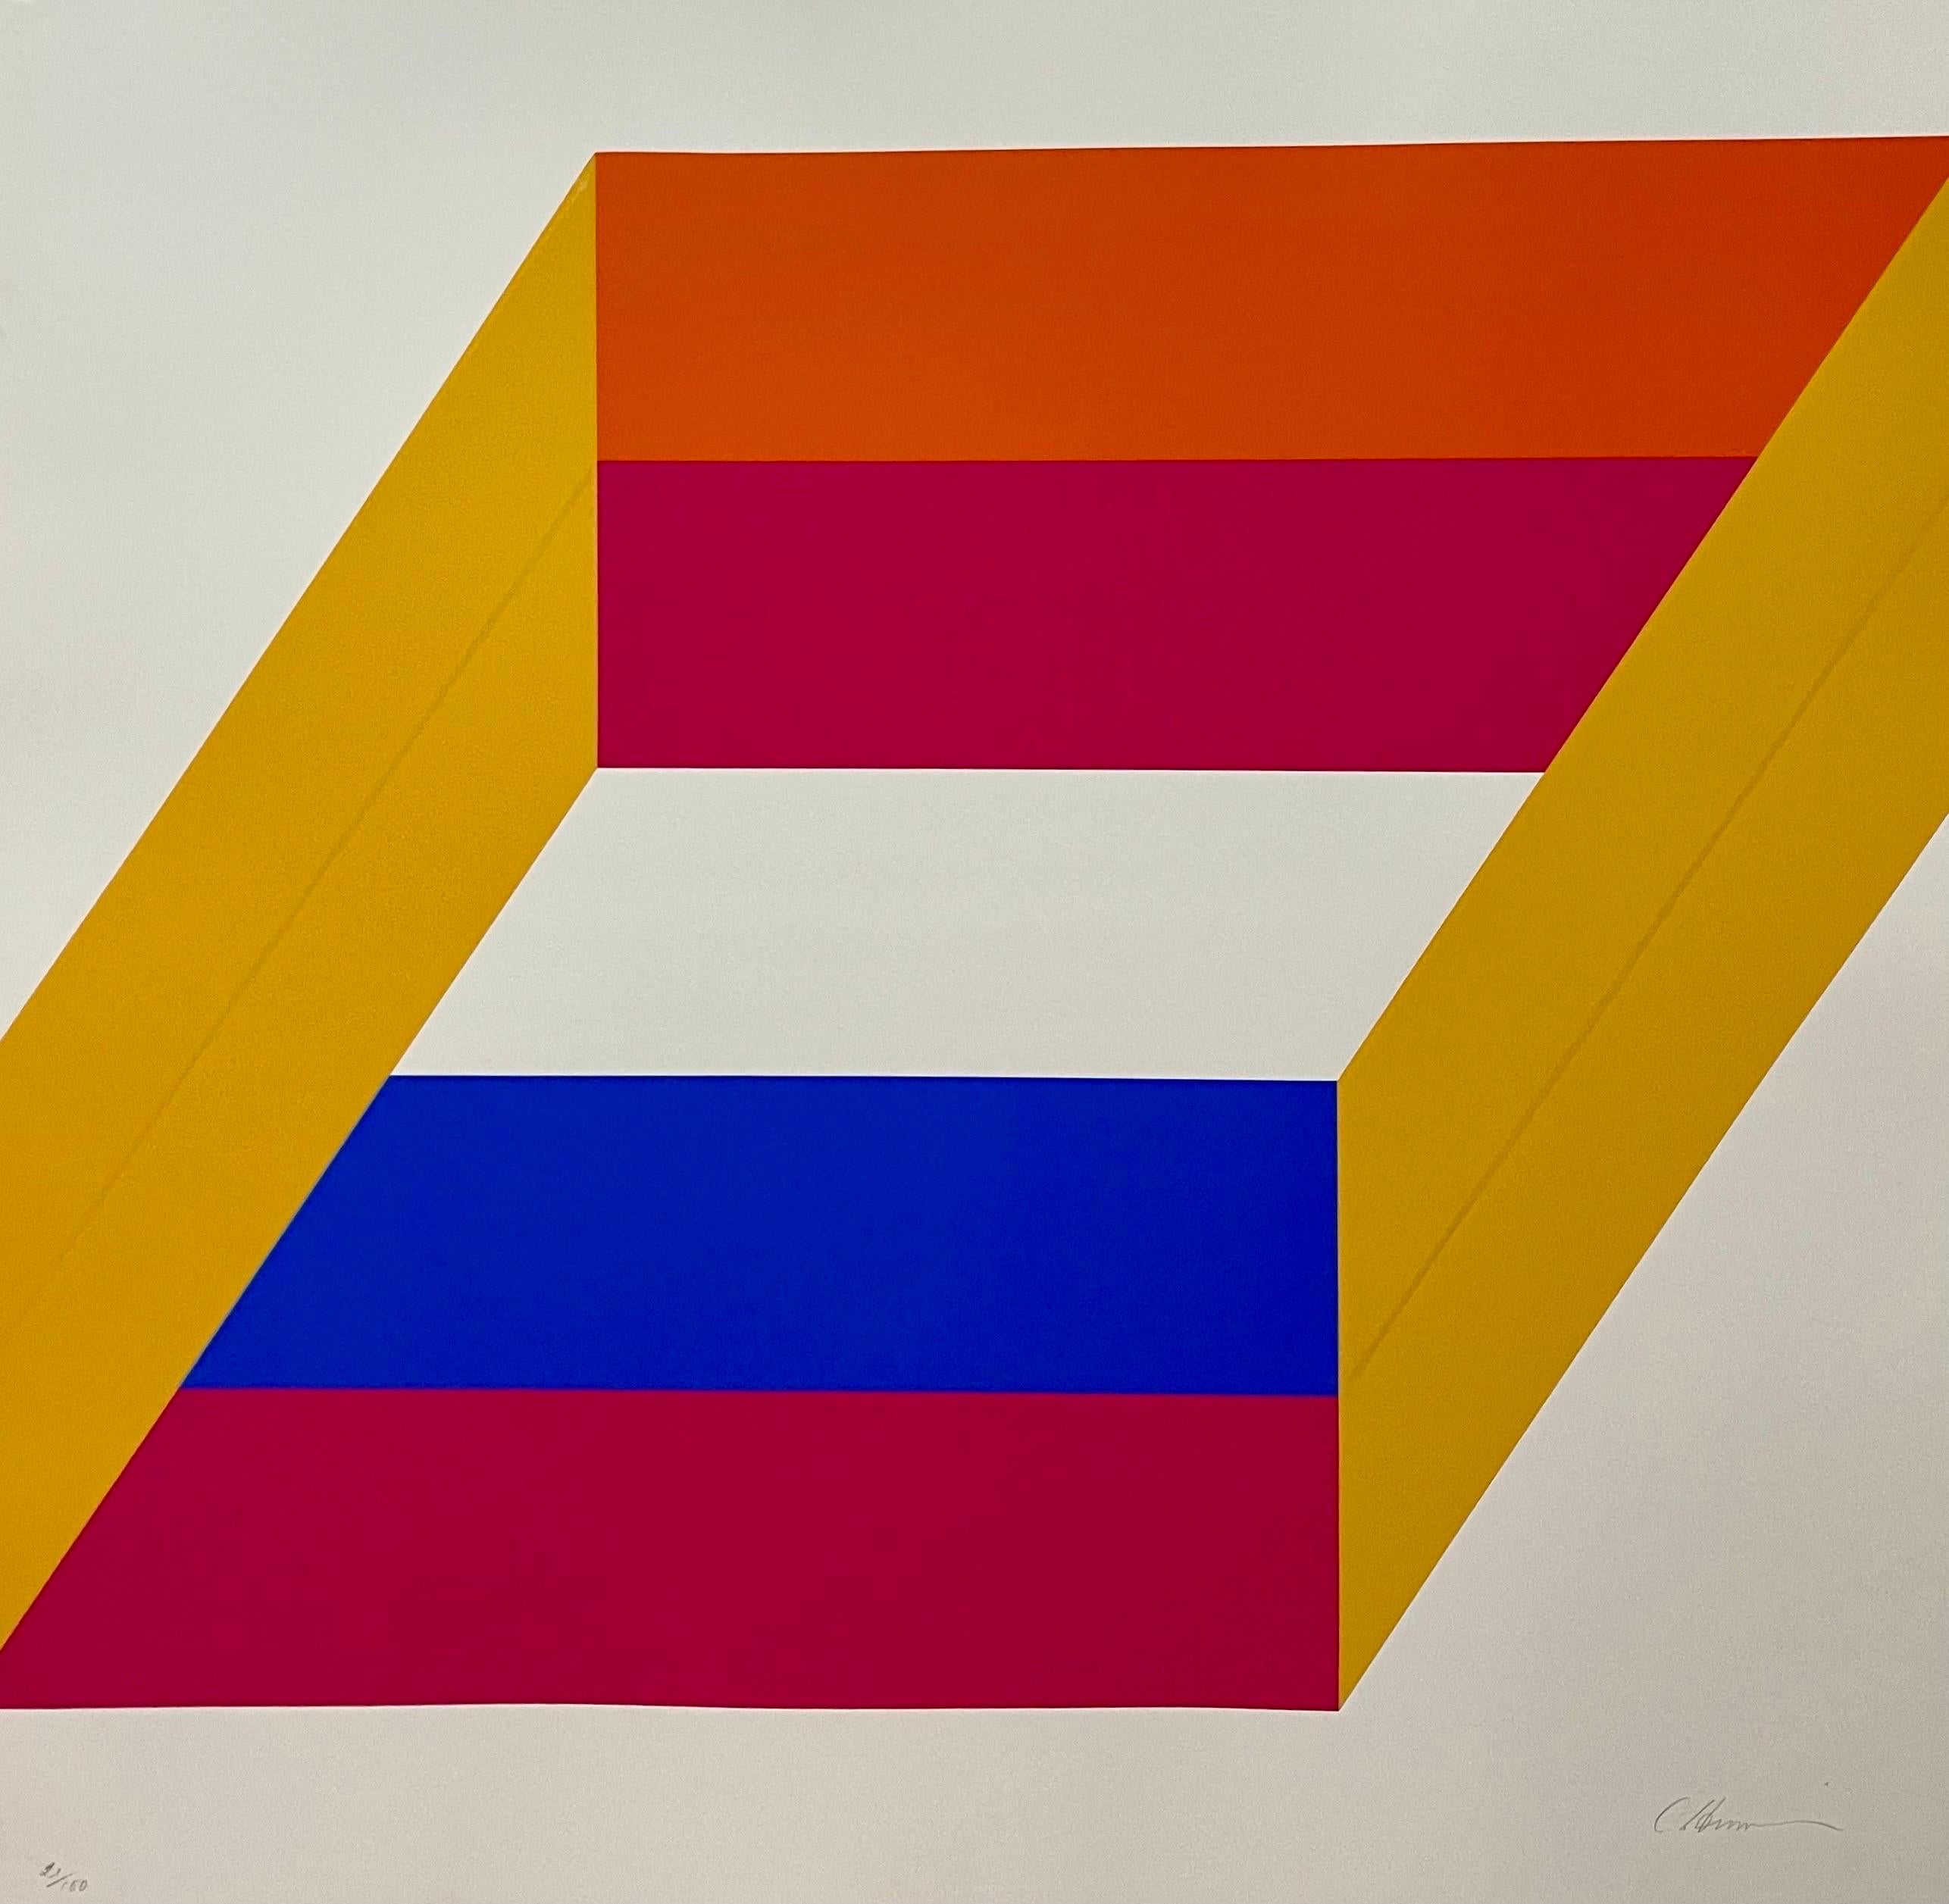 Abstrakter, minimalistischer, farbiger Siebdruck von Charles Hinman auf der Schleife, 1969-71 